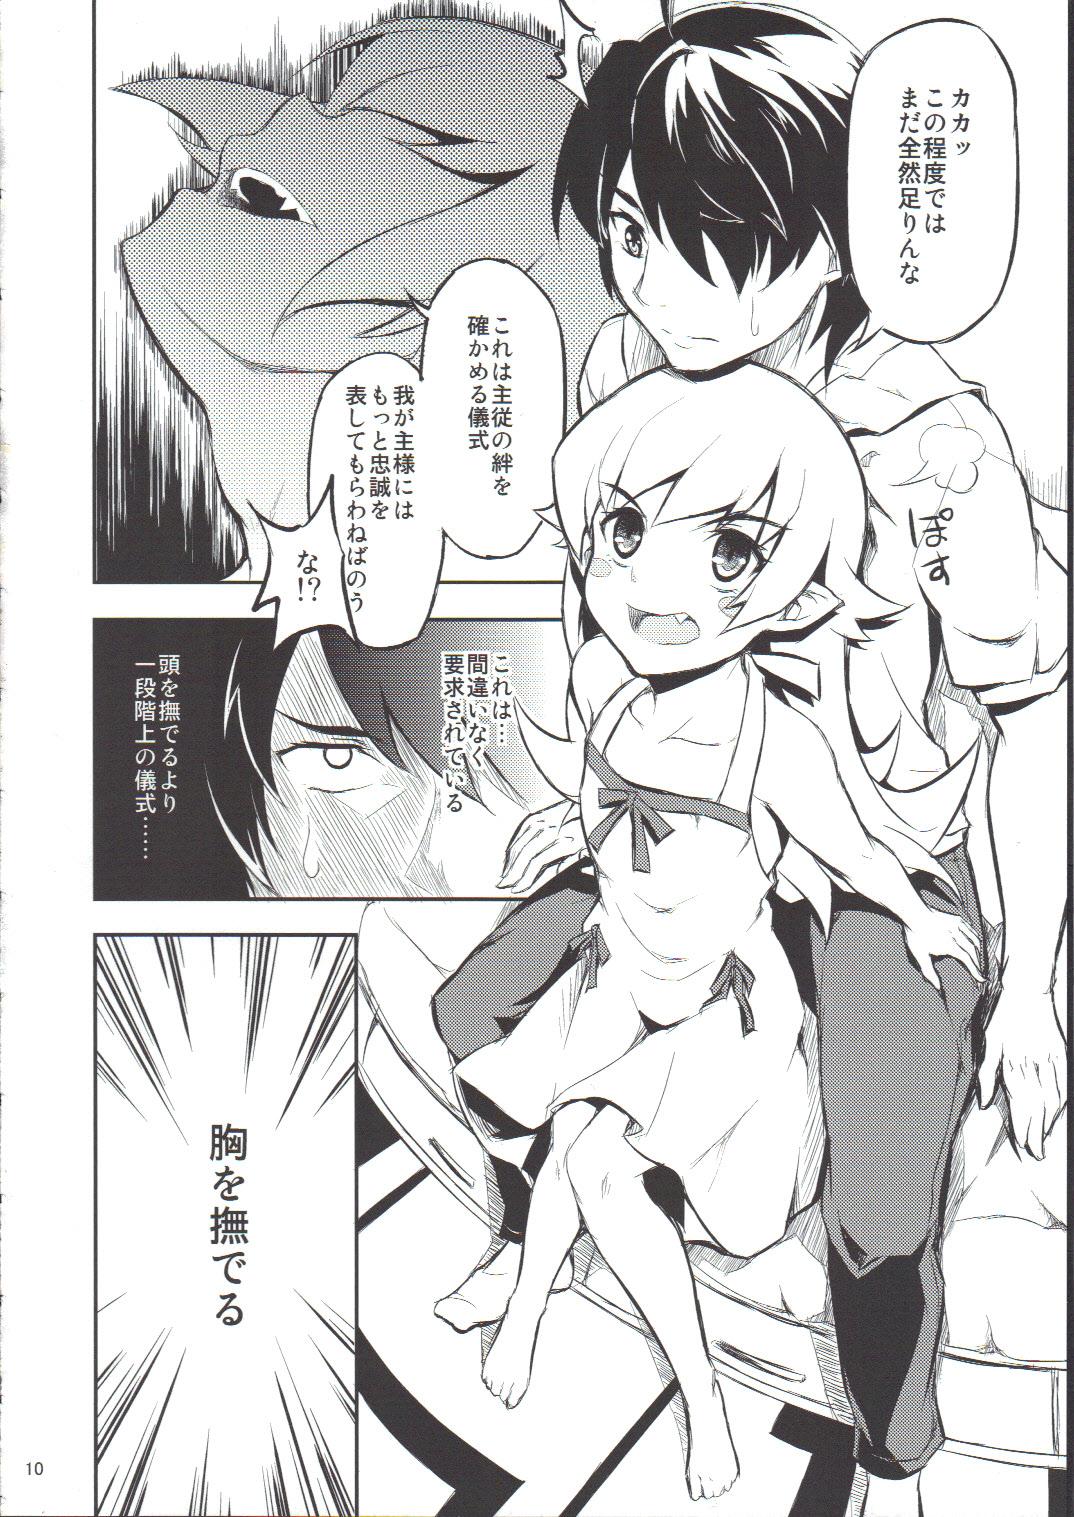 Twinkstudios Shinobu no Shinobu 2 - Bakemonogatari Rebolando - Page 9